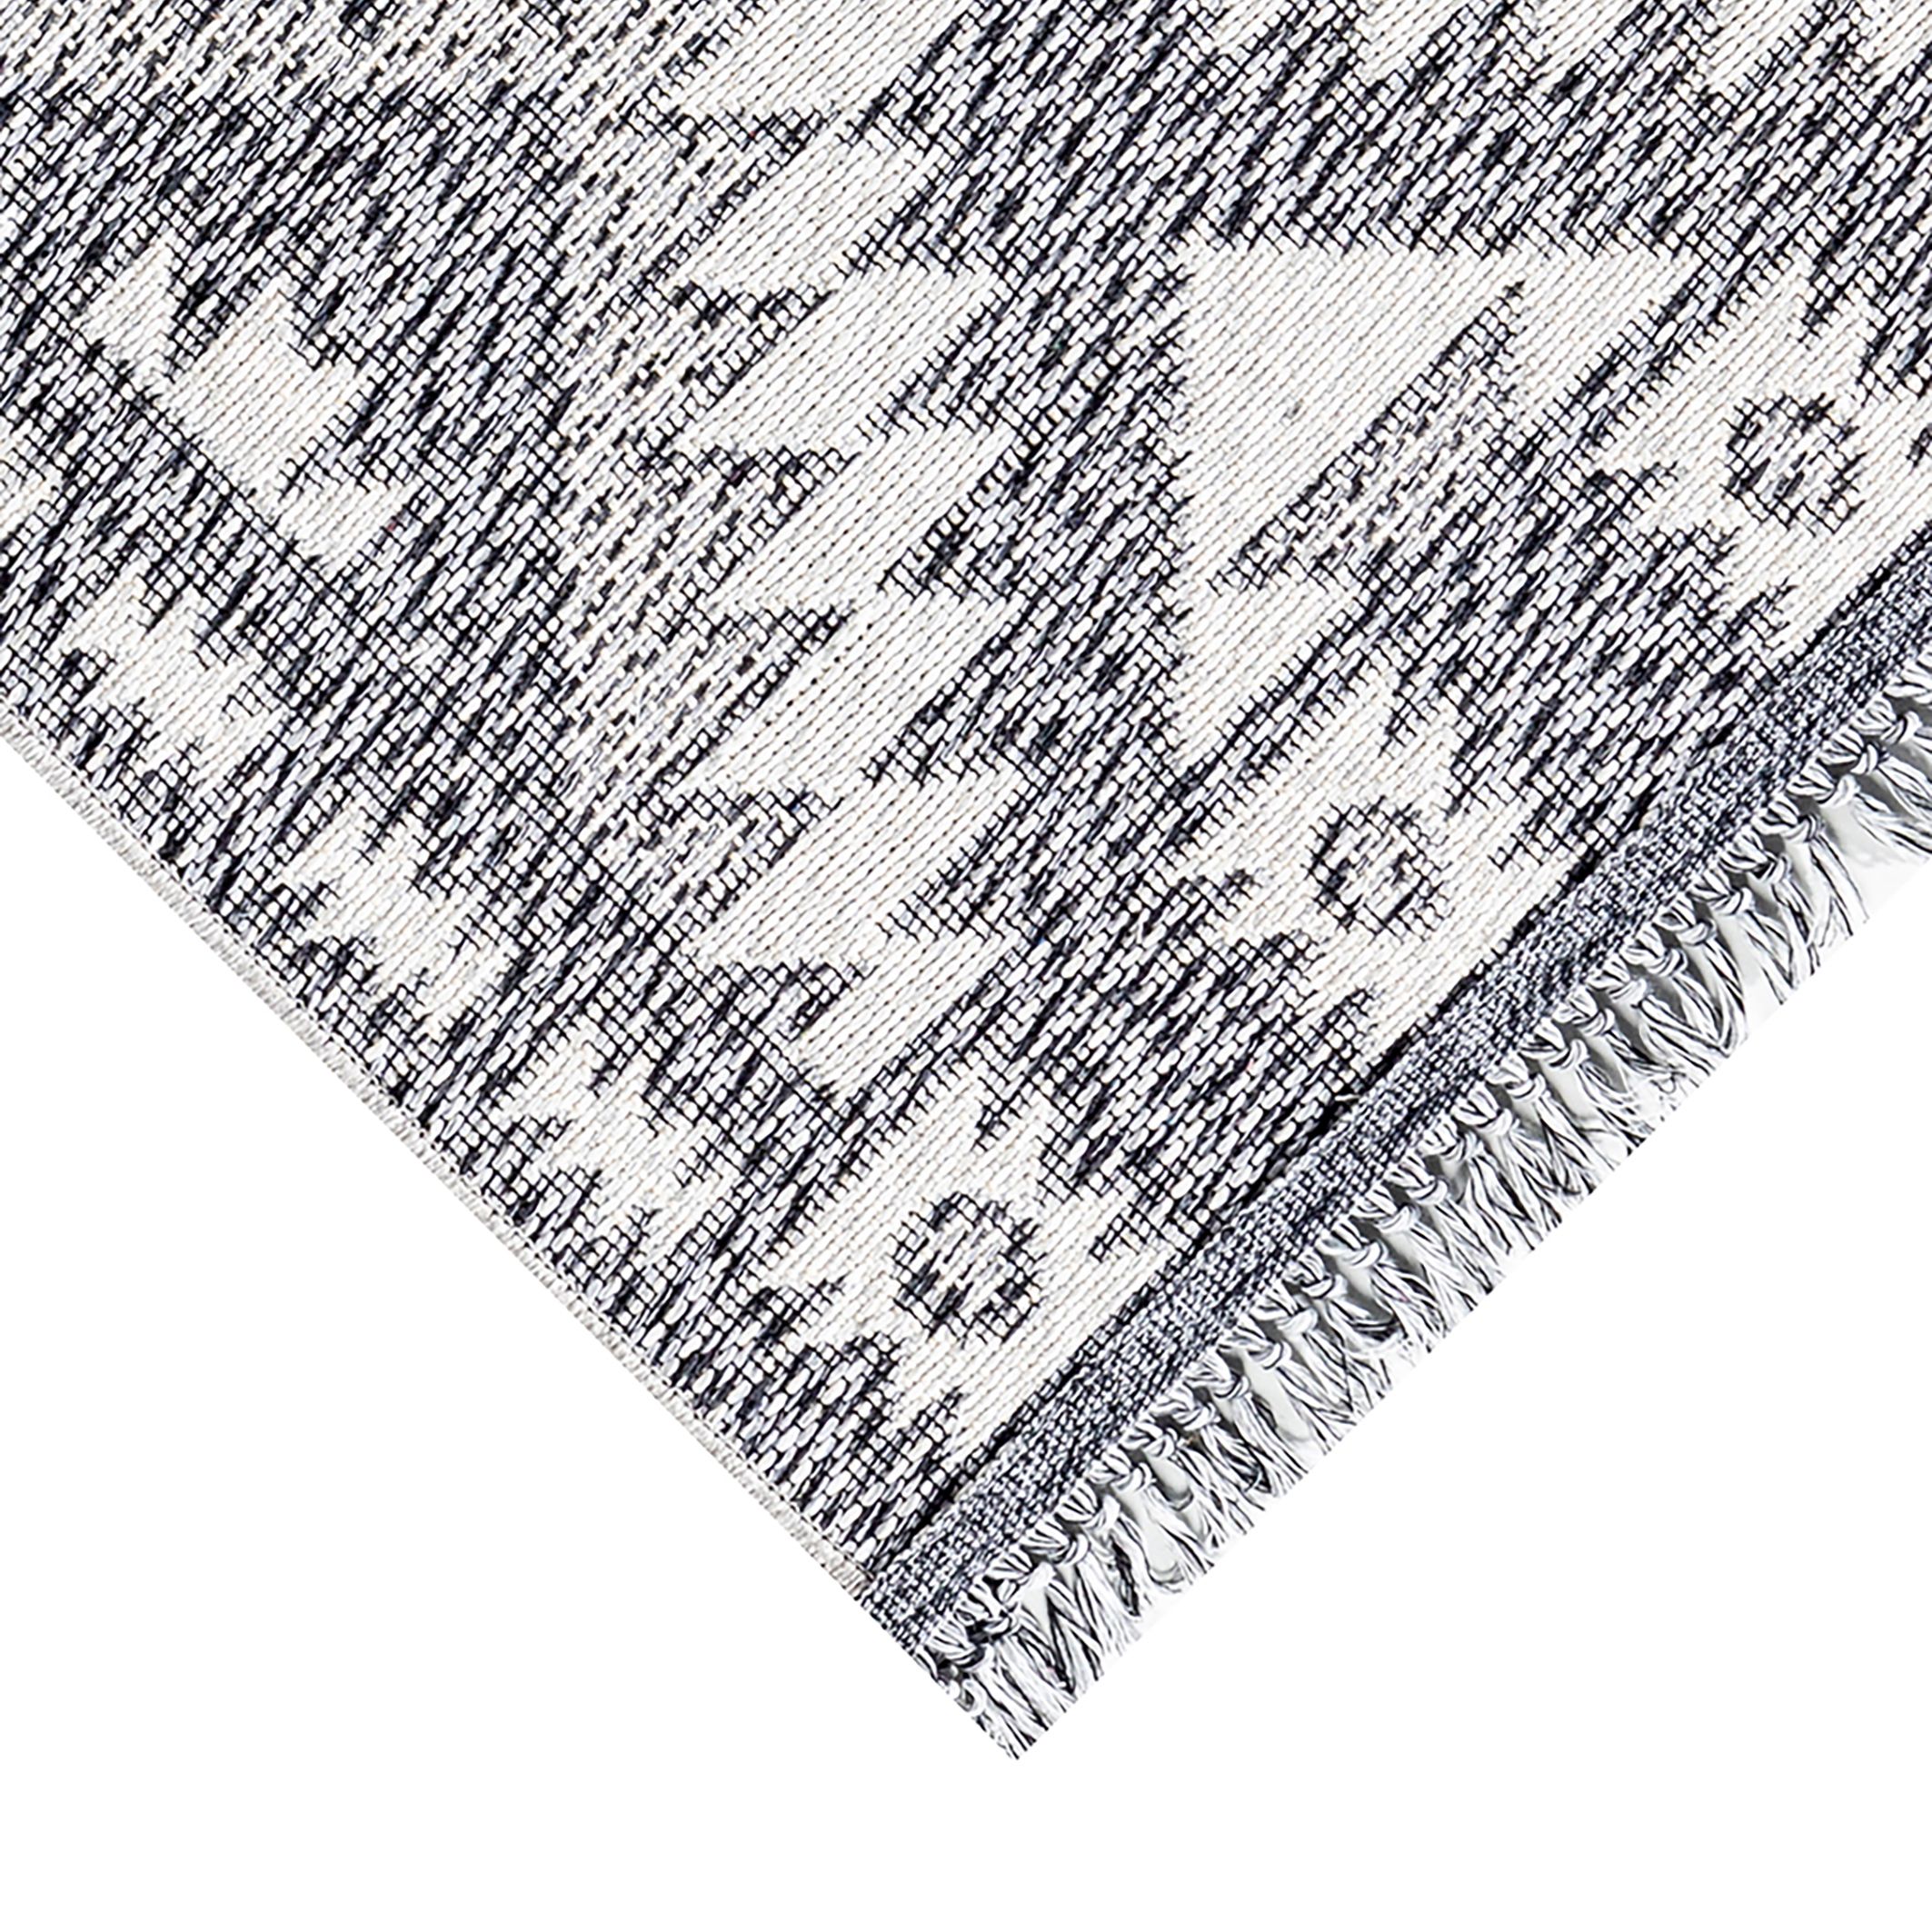 Ankara Grey Aztec Woven effect Medium Rug, (L)170cm x (W)120cm